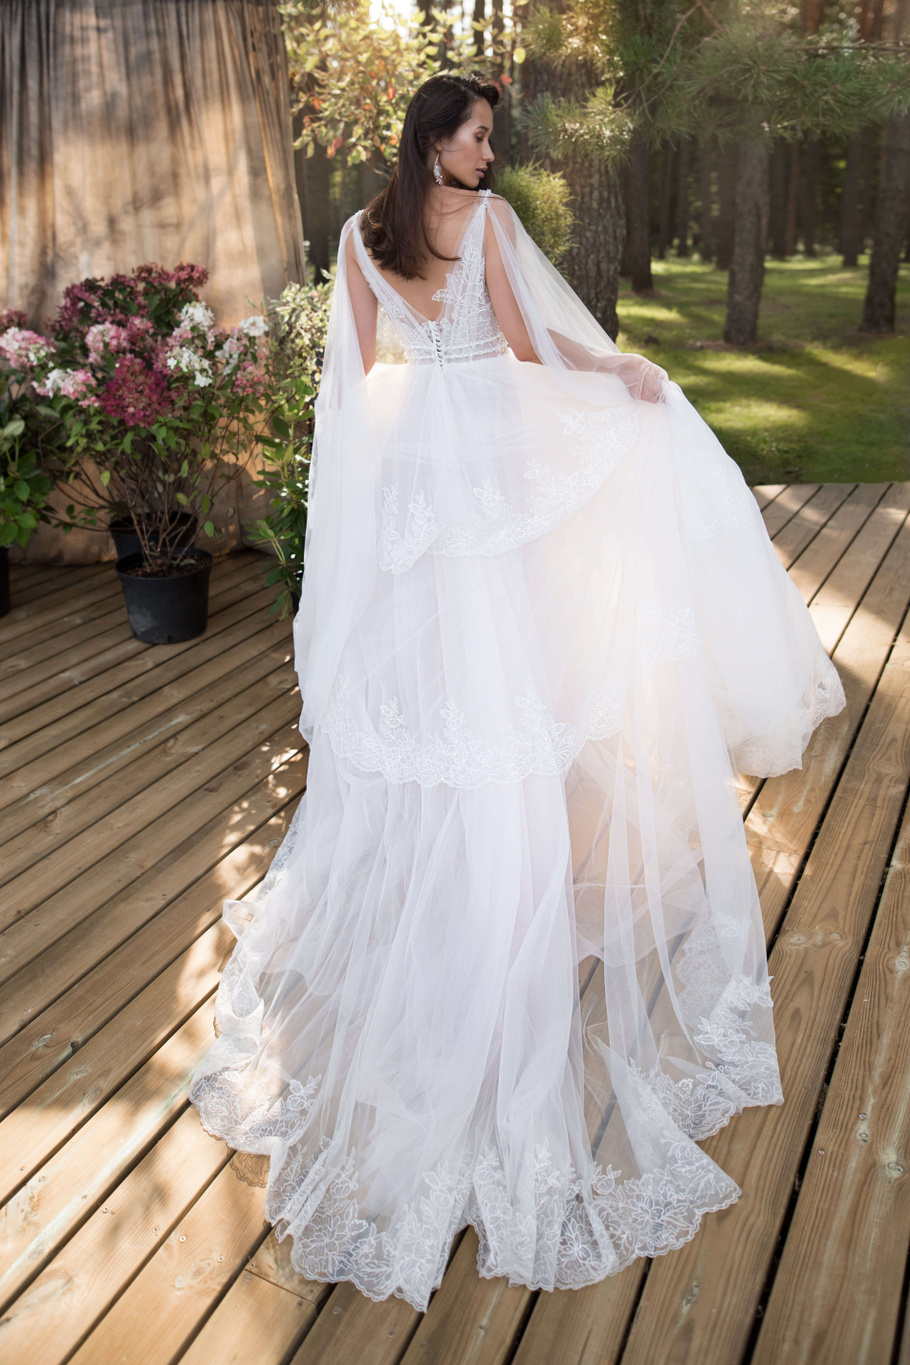 Купить свадебное платье «Николя» Бламмо Биамо из коллекции Нимфа 2020 года в Екатеринбурге